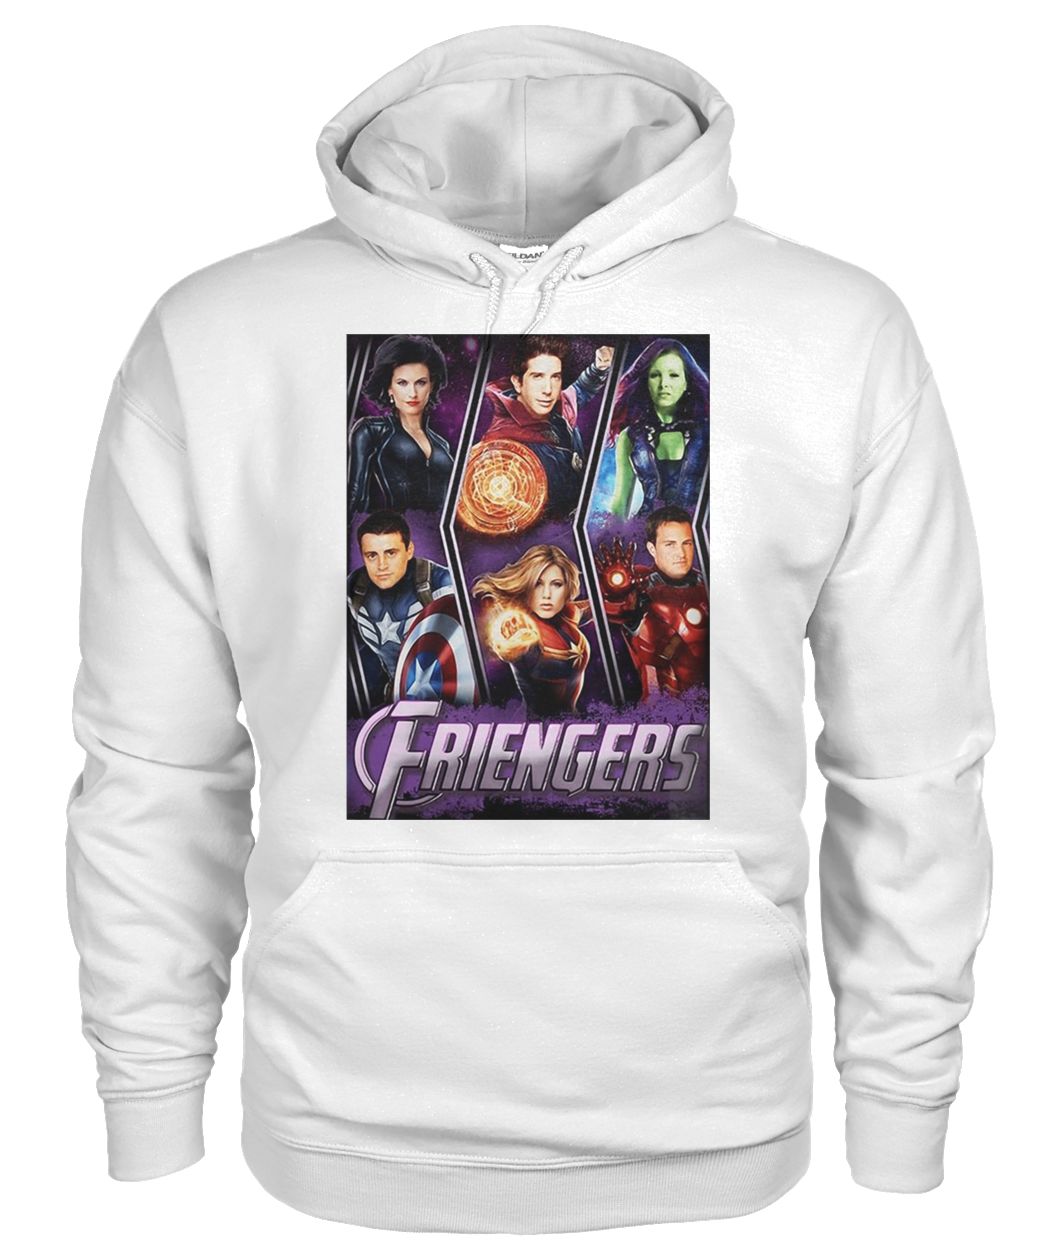 Marvel avengers endgame friengers friend gildan hoodie